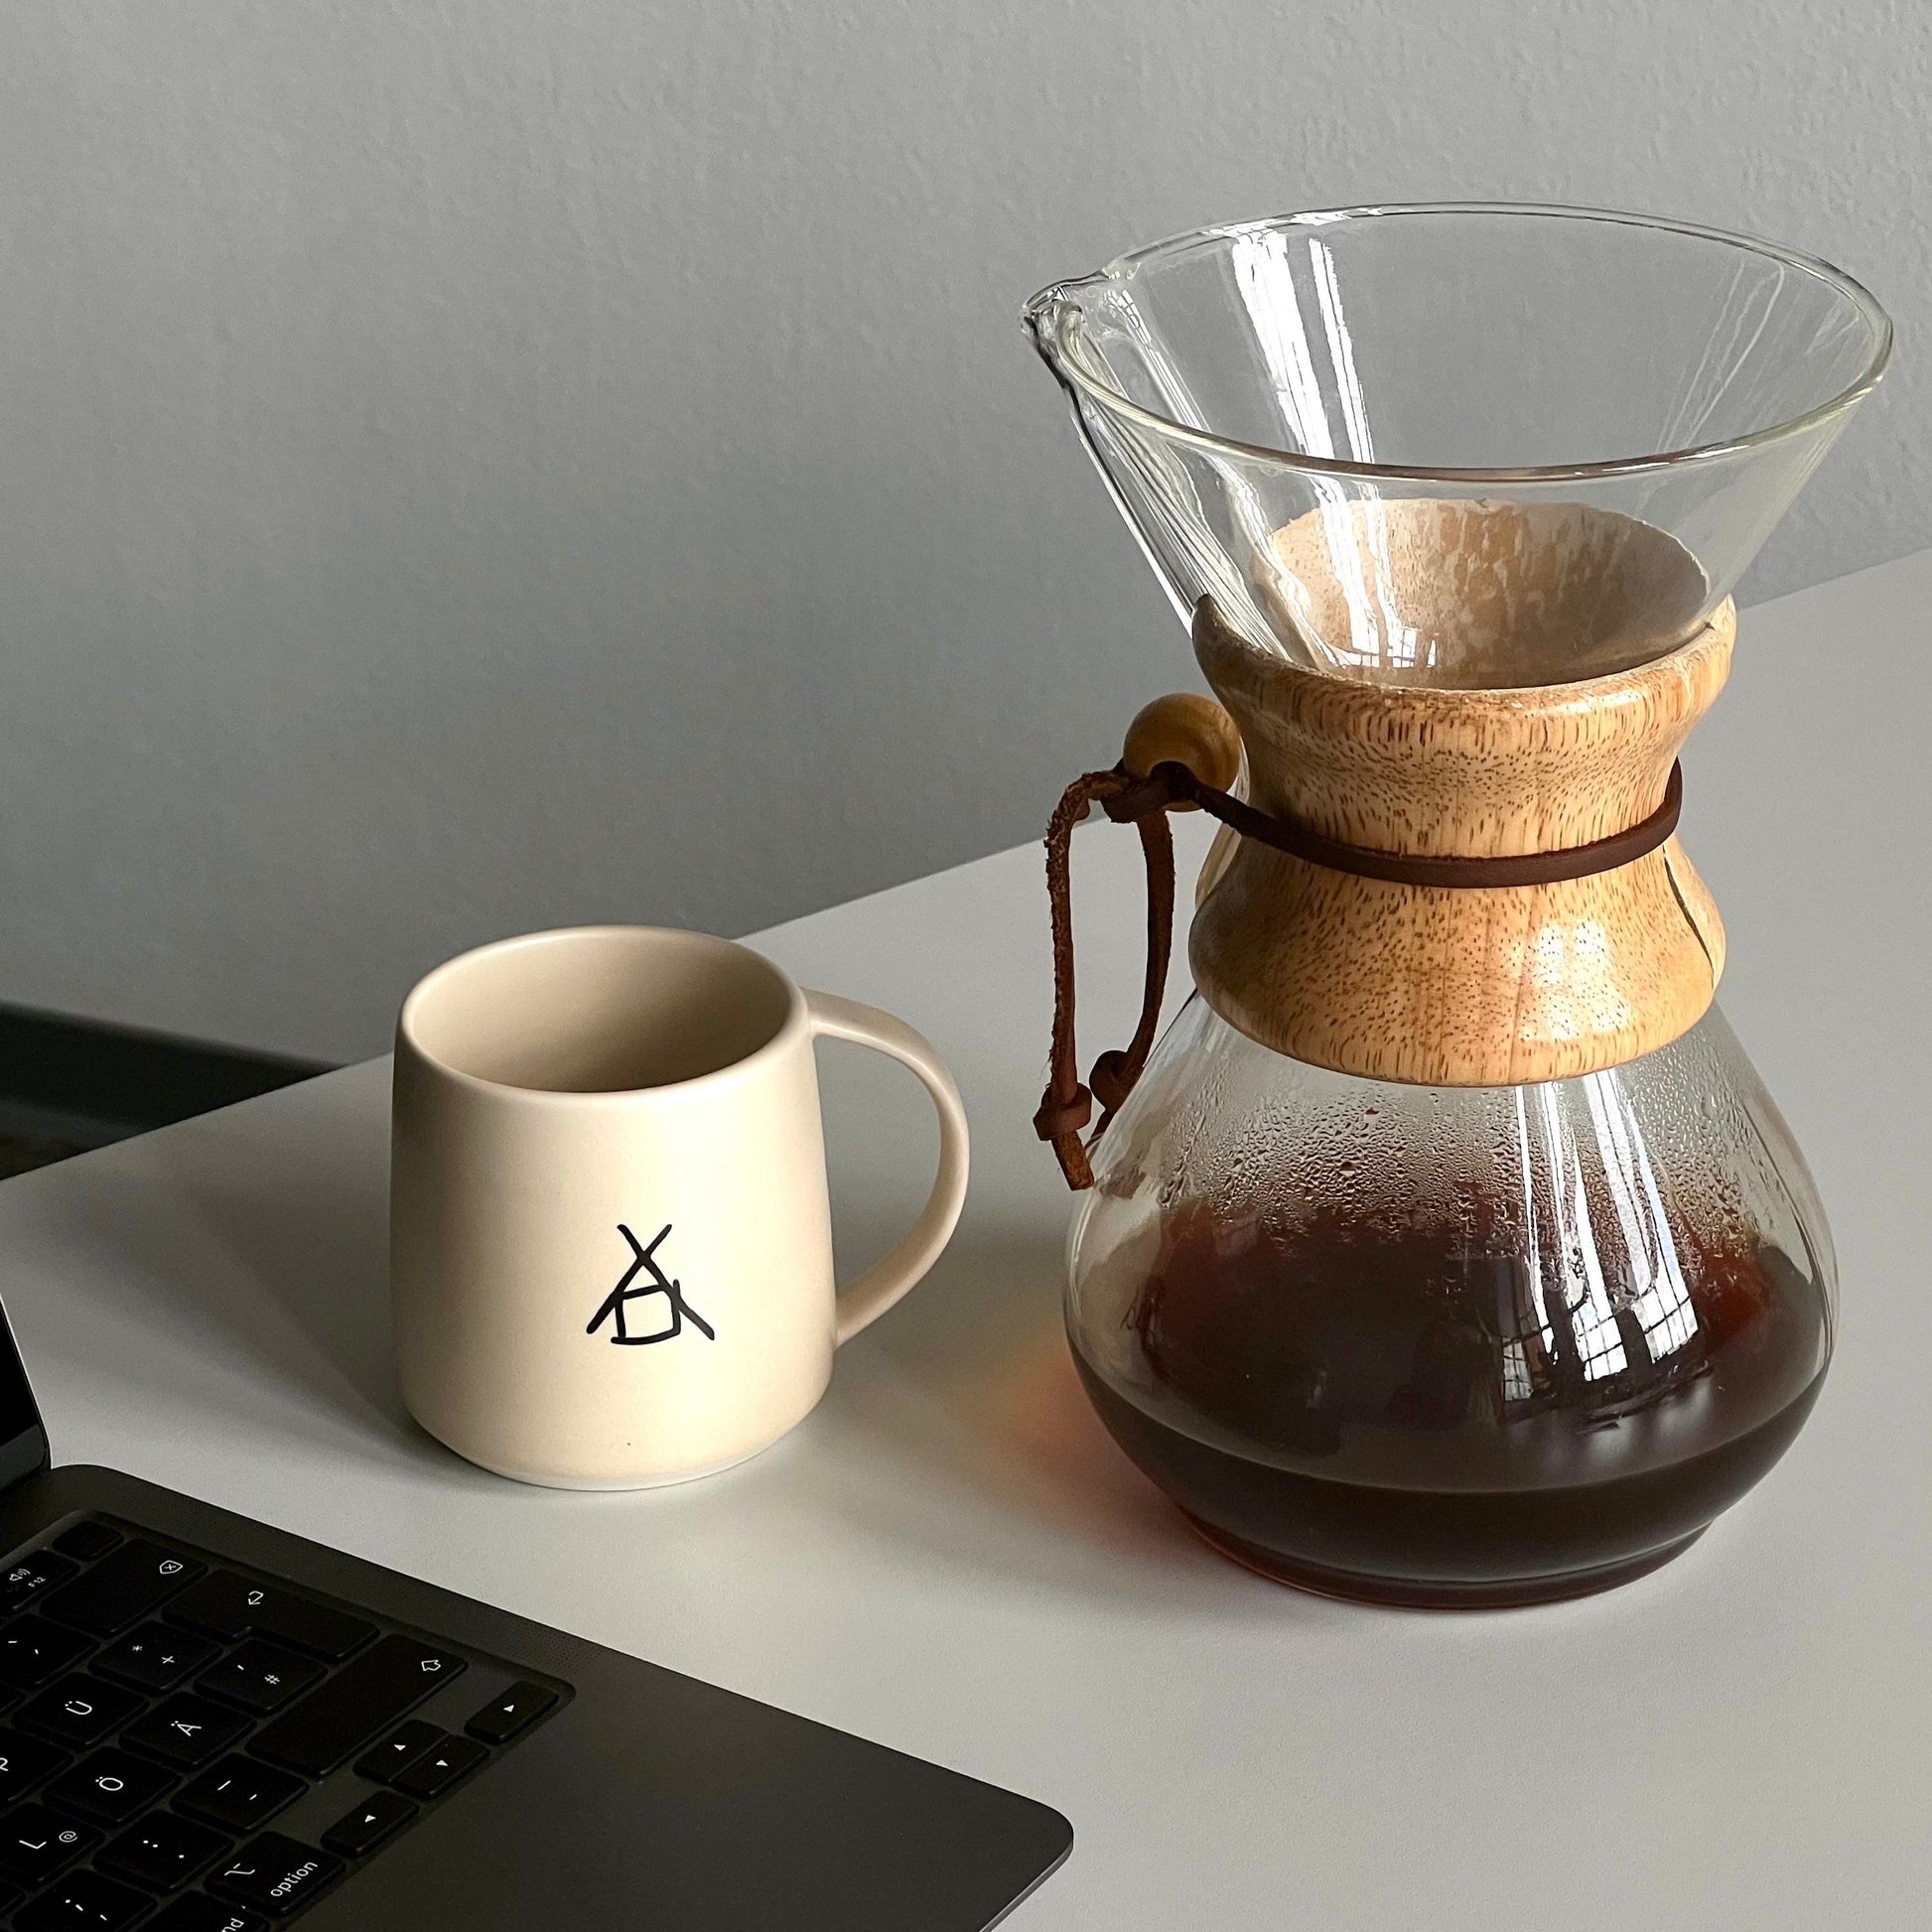 Ein offener Laptop steht außerhalb des Bildes, daneben ein weißer Becher mit dem The Barn-Logo. Neben dem Becher steht eine Chemex-Kaffeemaschine, die zur Hälfte mit frisch gebrühtem Kaffee gefüllt ist.